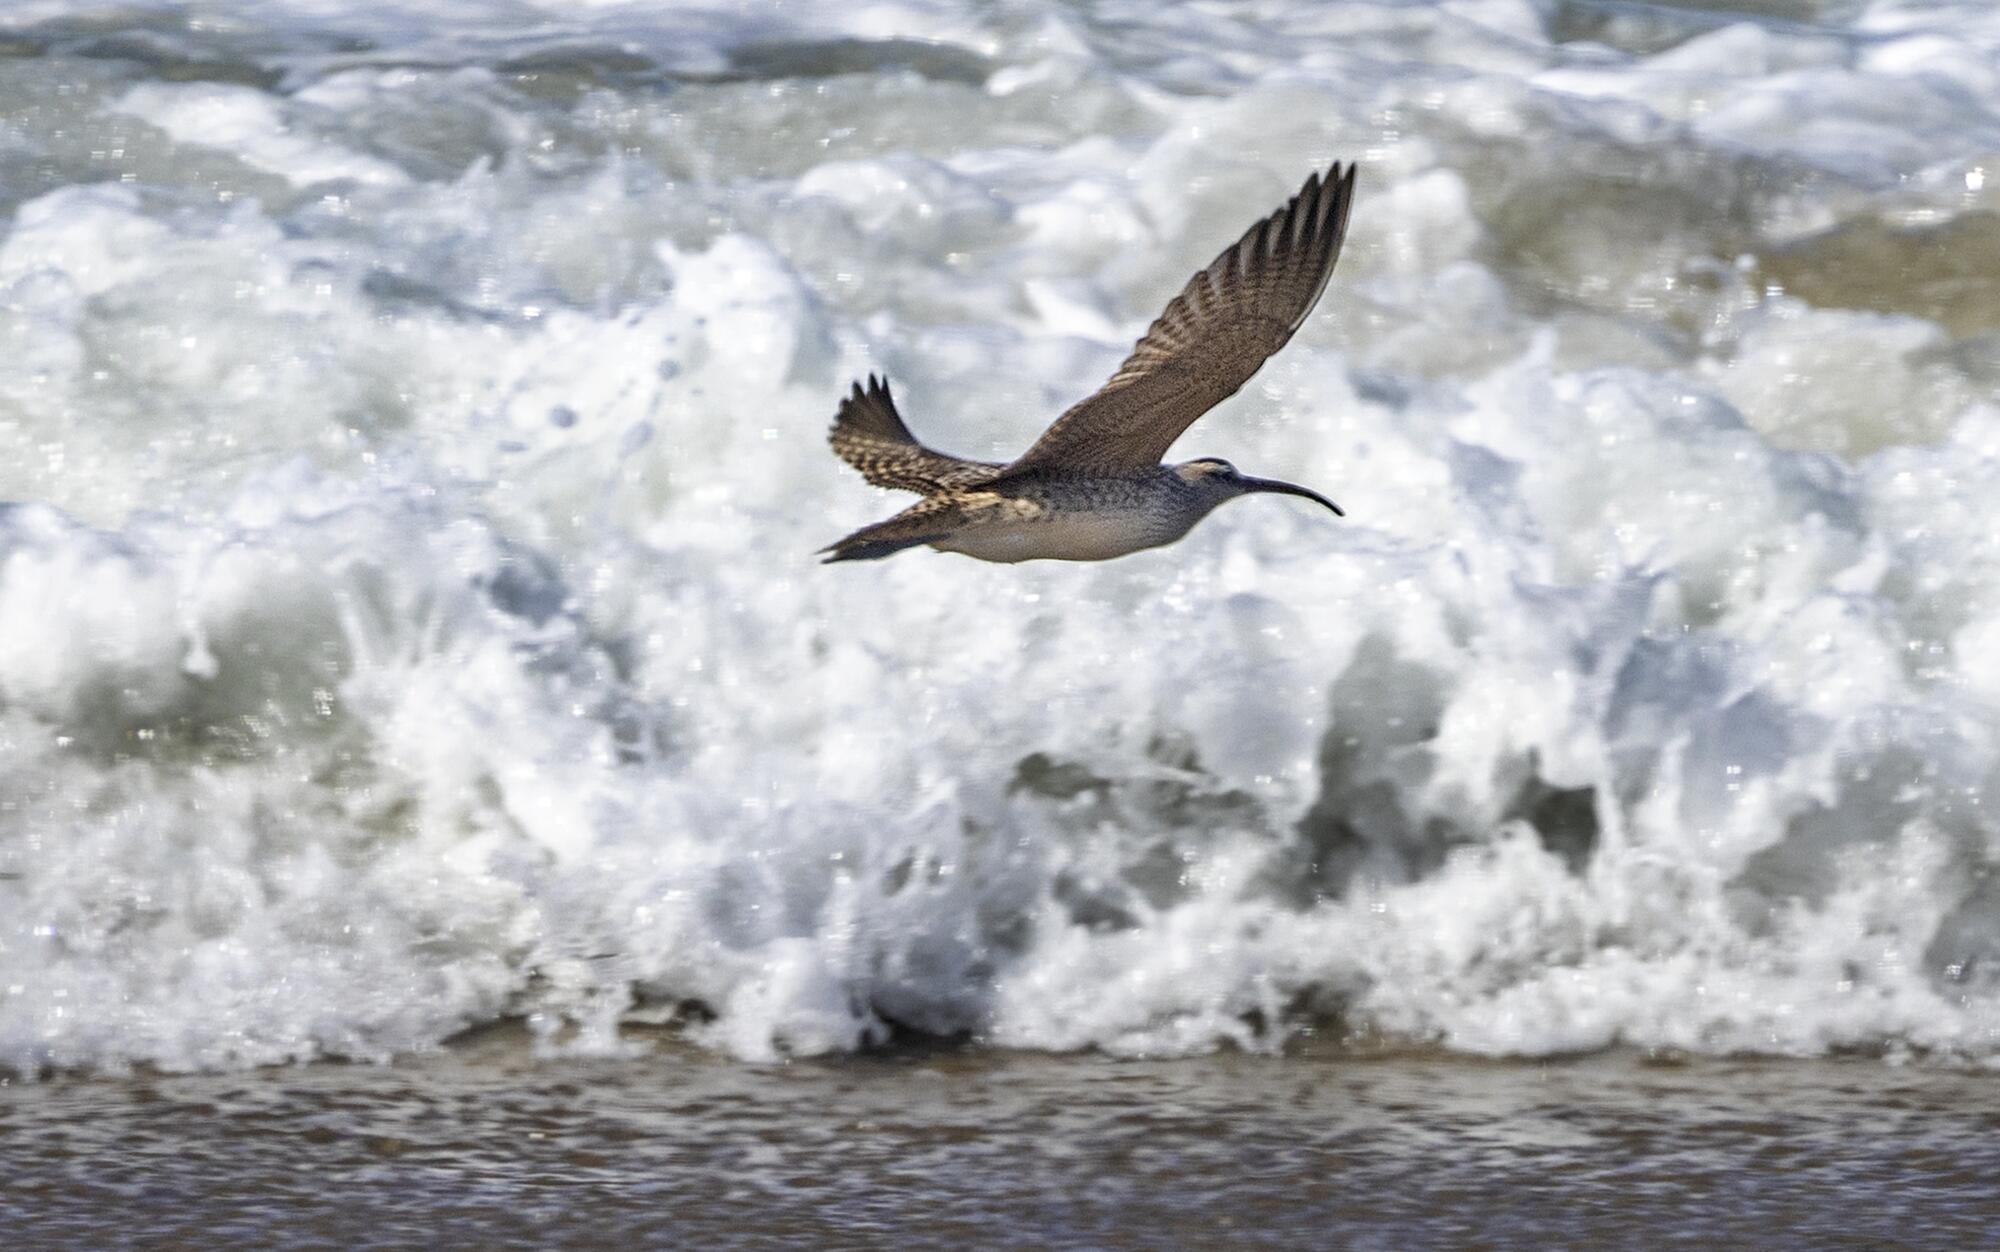 A bird with a long narrow beak flies along a beach.